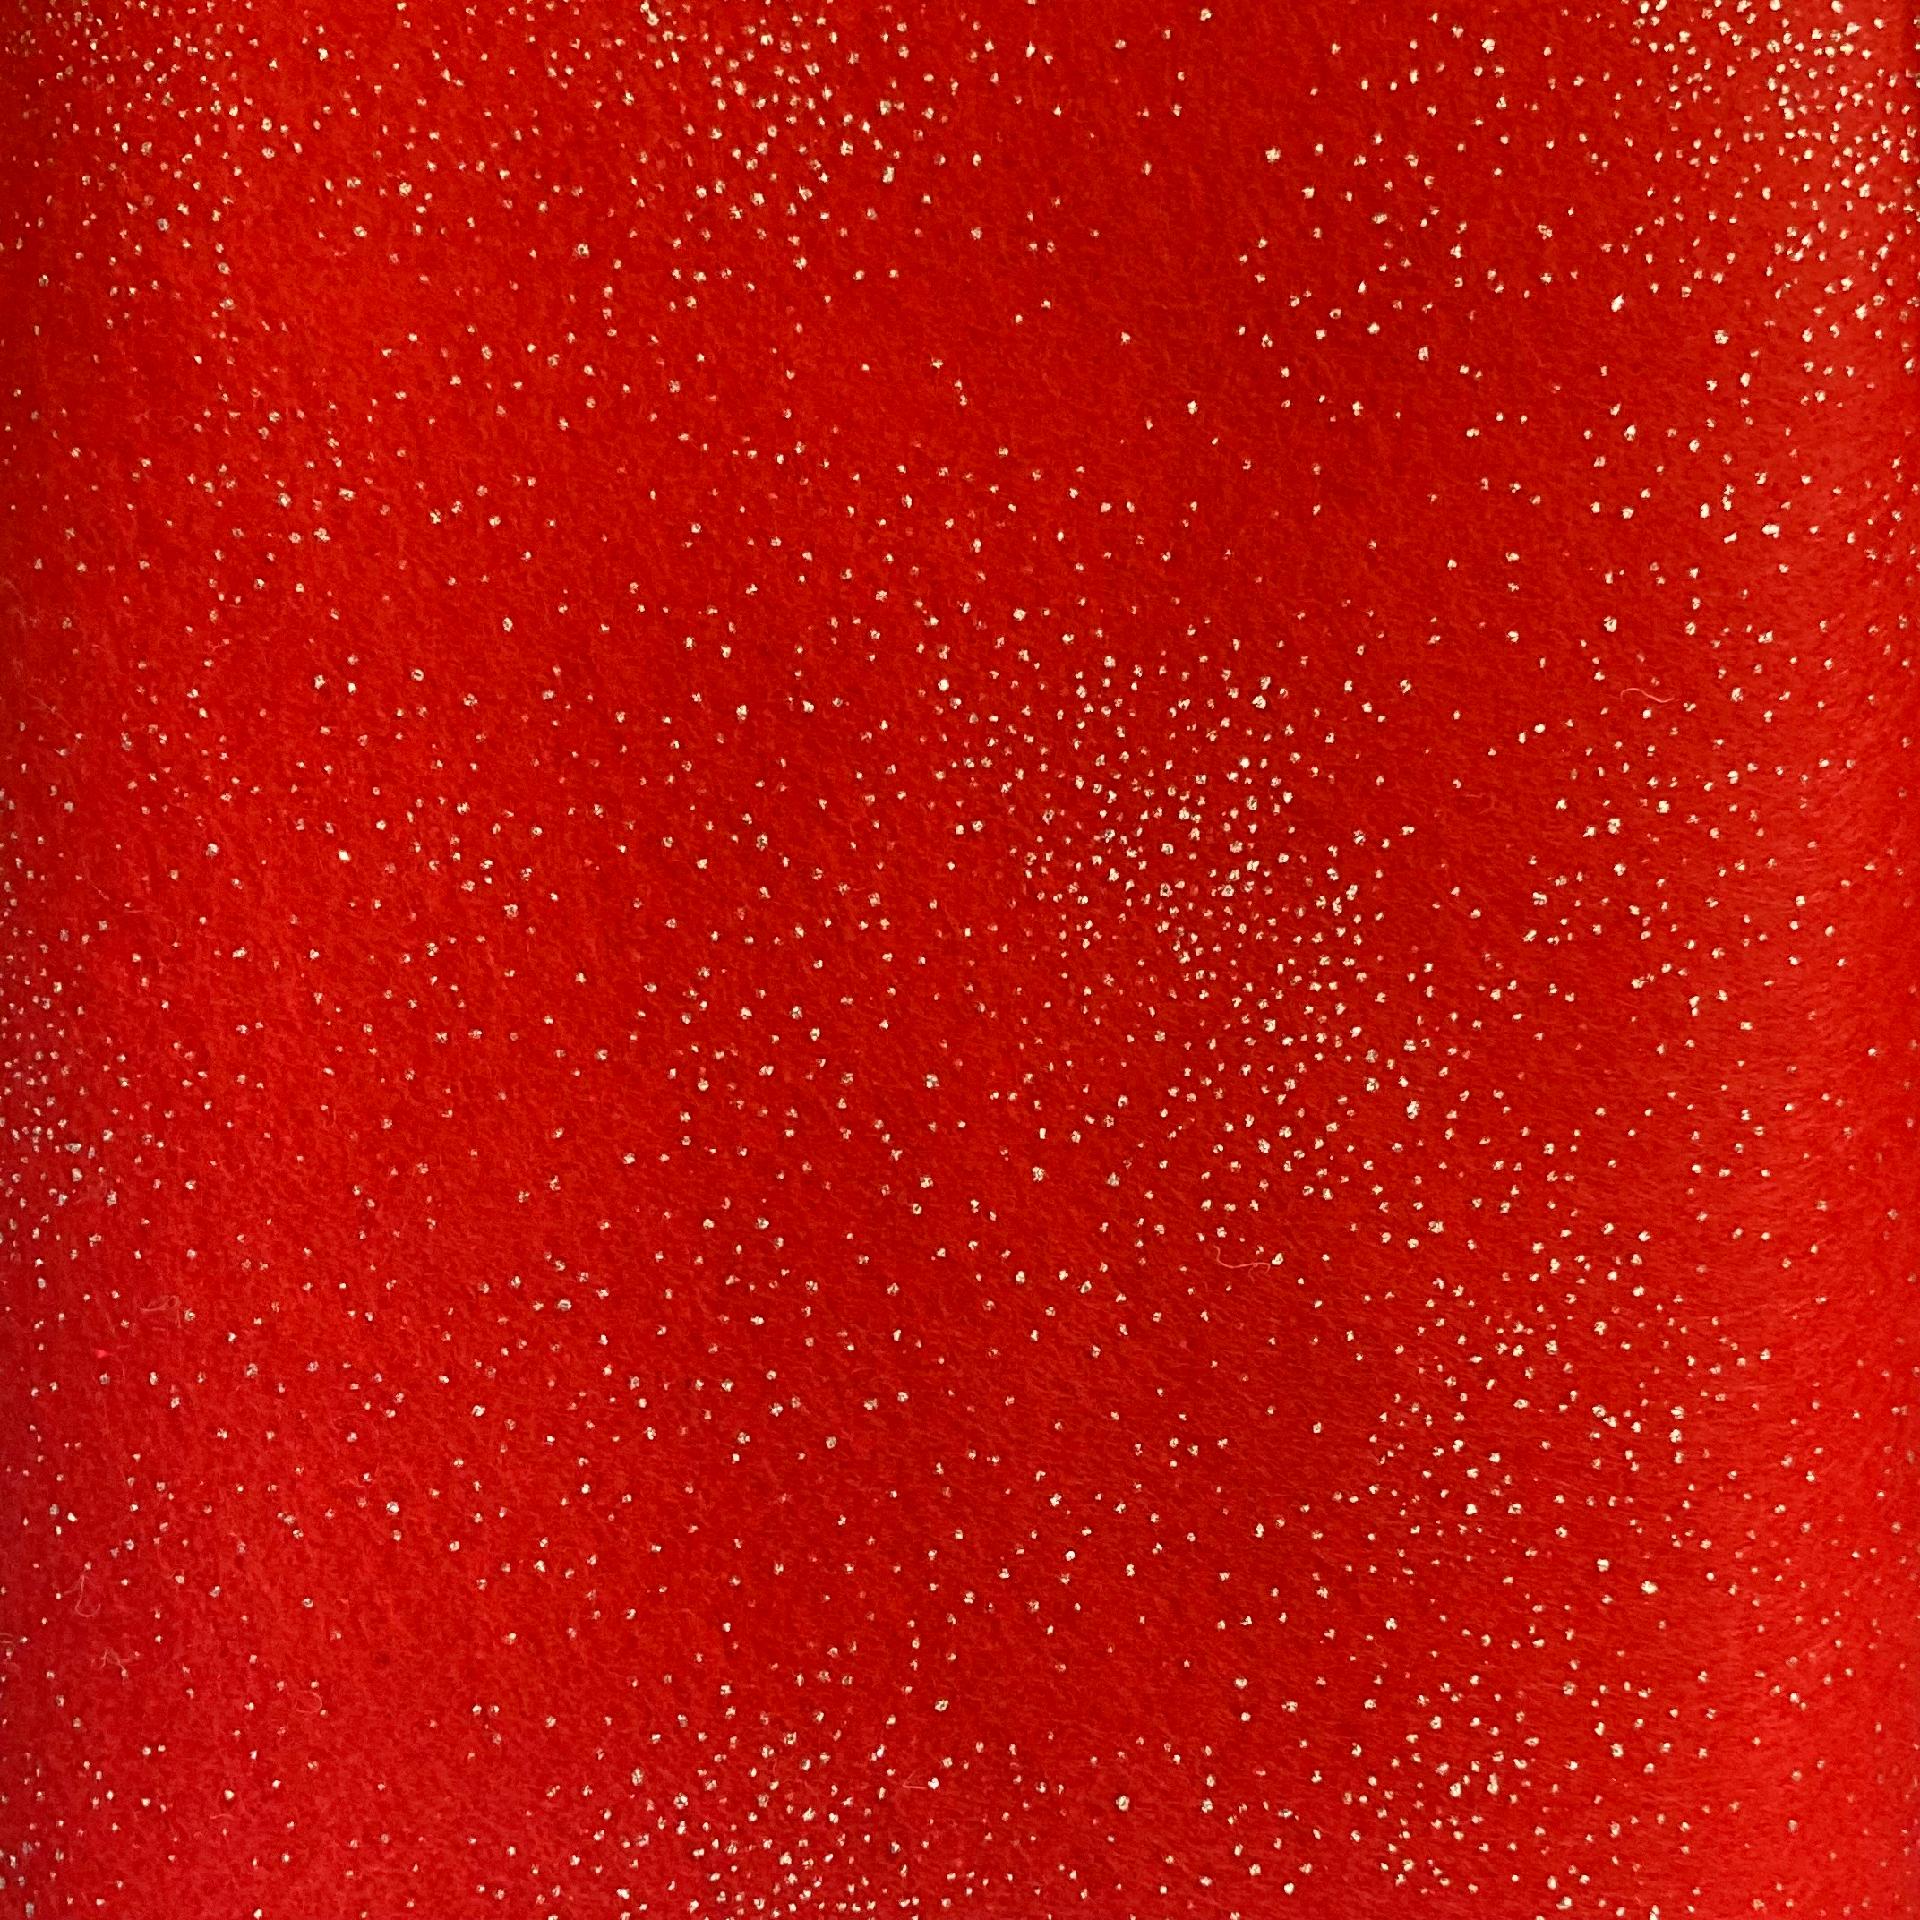 Pannolenci Rosso con Glitter 1 mm Stafil 90 x 50cm - Bagheria (Palermo)